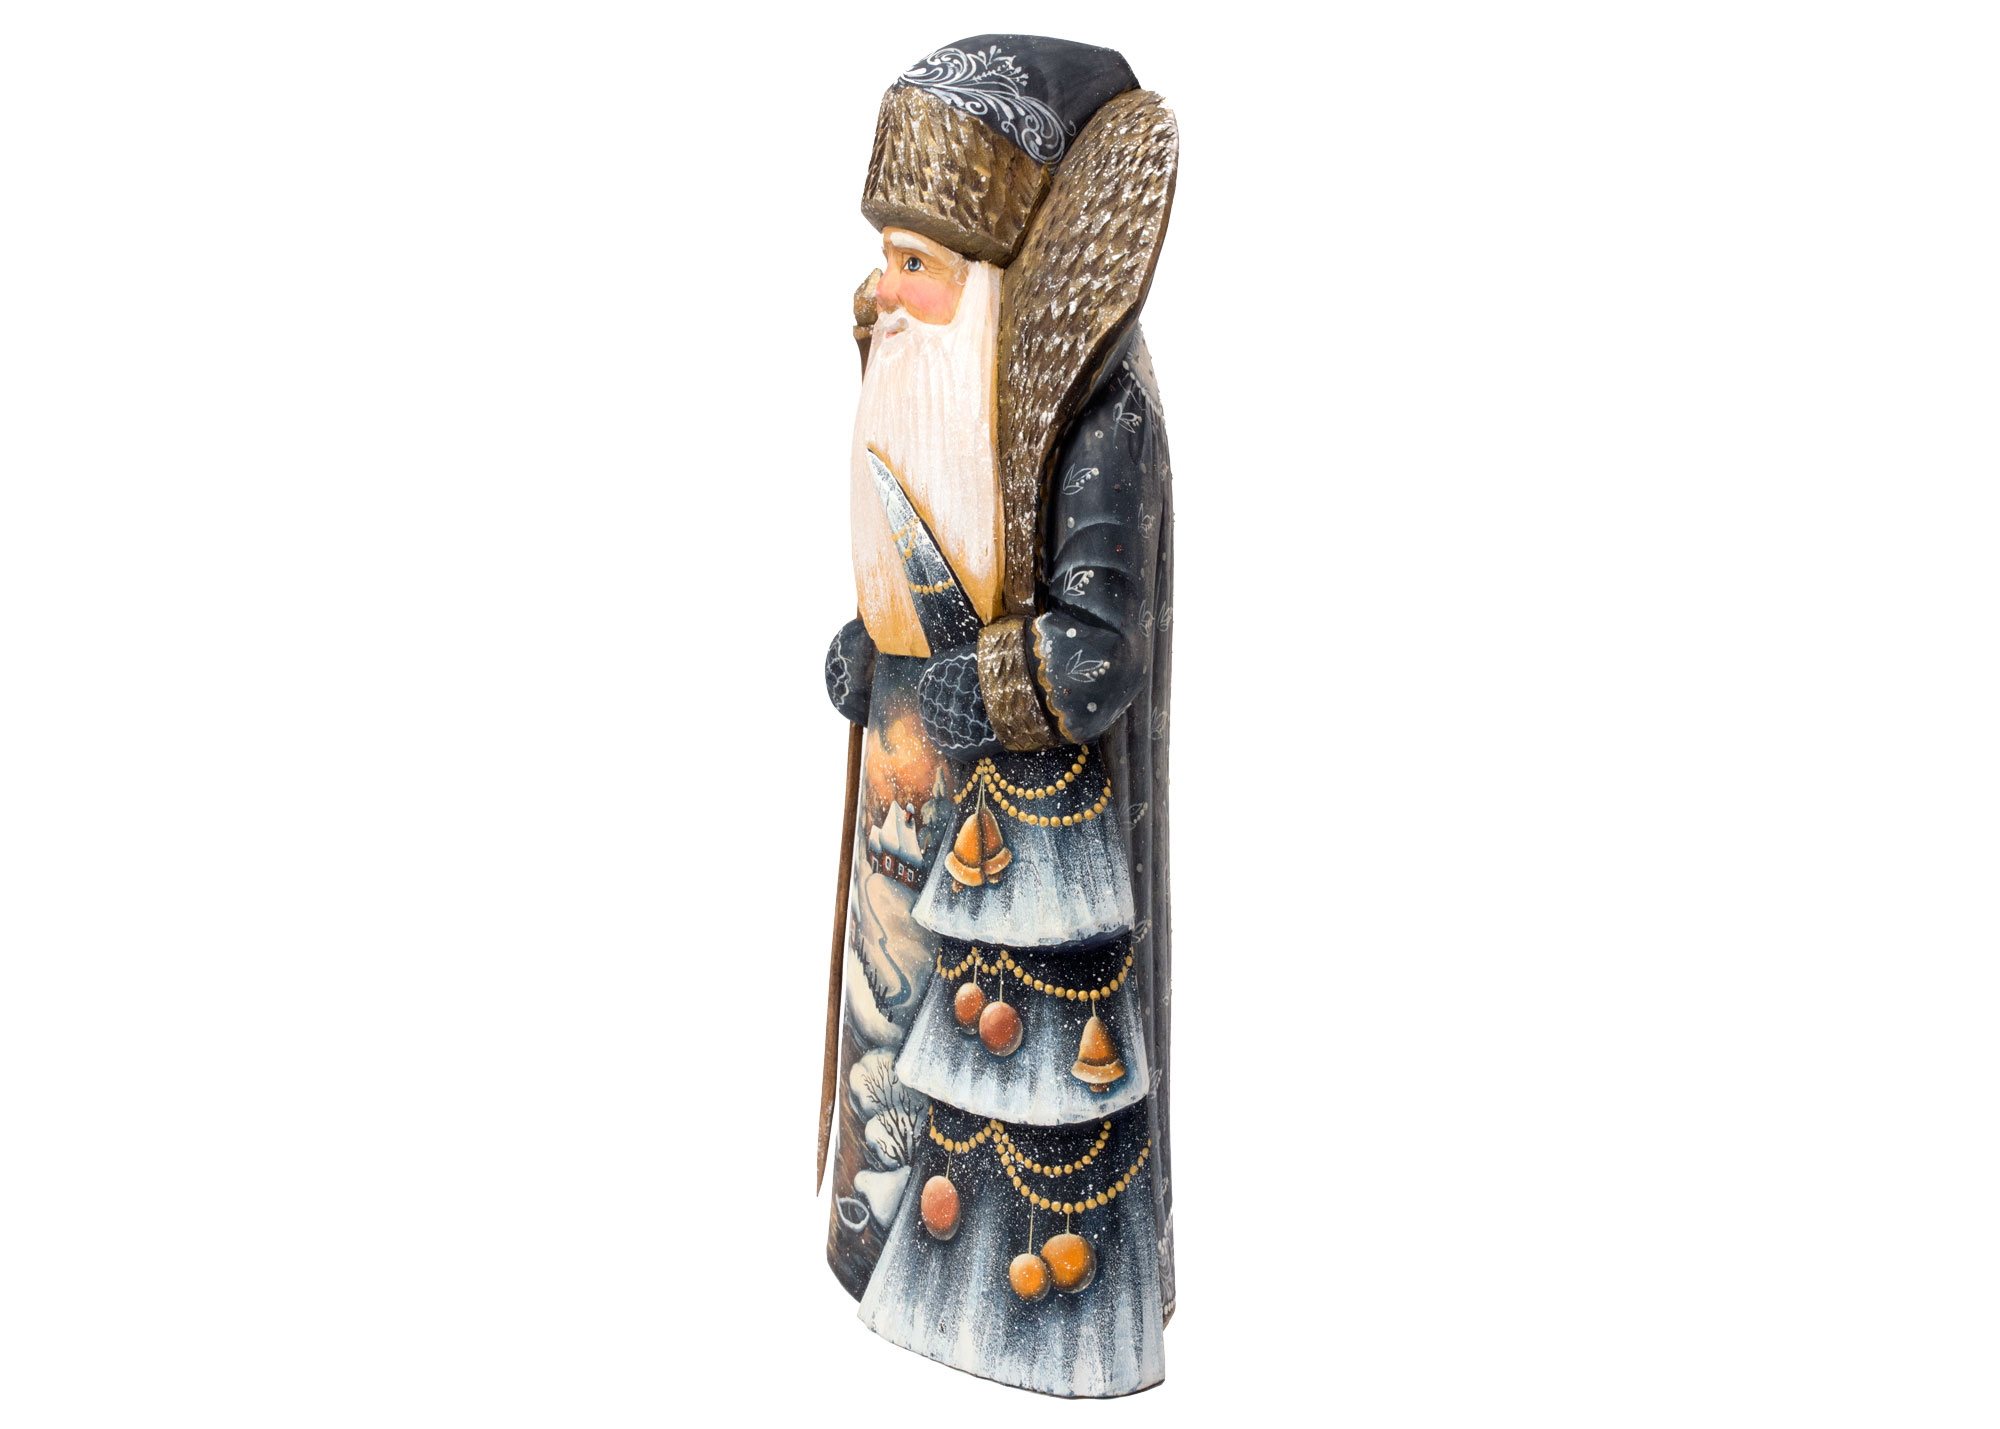 Buy Резная фигура Деда Мороза с елочкой 30 см at GoldenCockerel.com